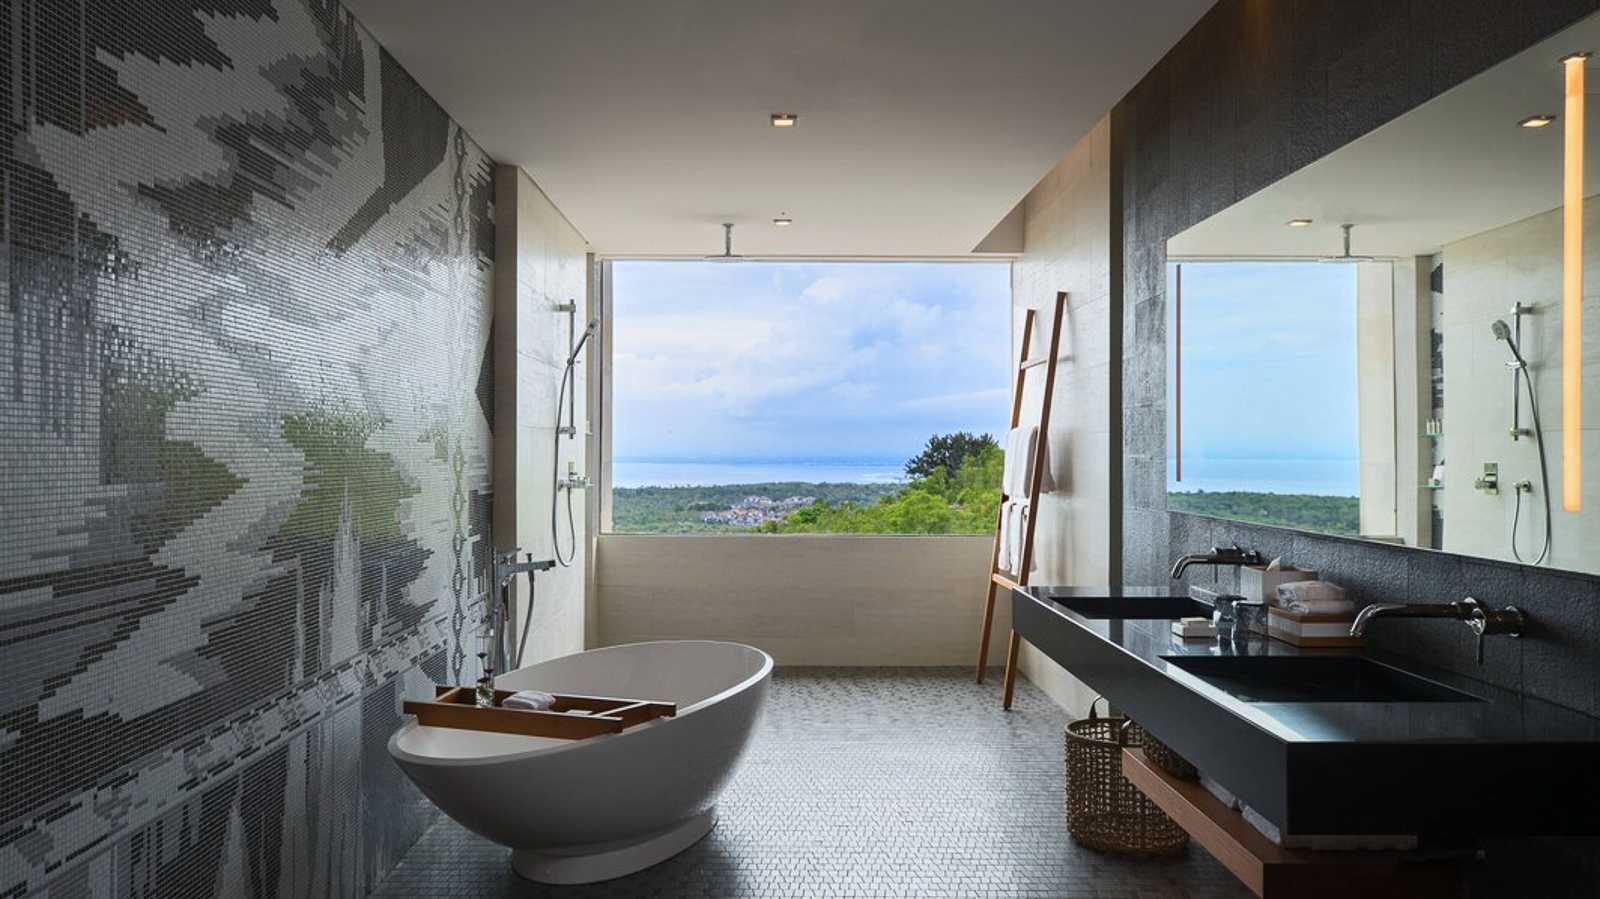 【峇里島自由行】行政套房超豪華☆浴室比我房間還大!☆峇里島萬麗度假酒店 Renaissance Bali Uluwatu Resort & Spa